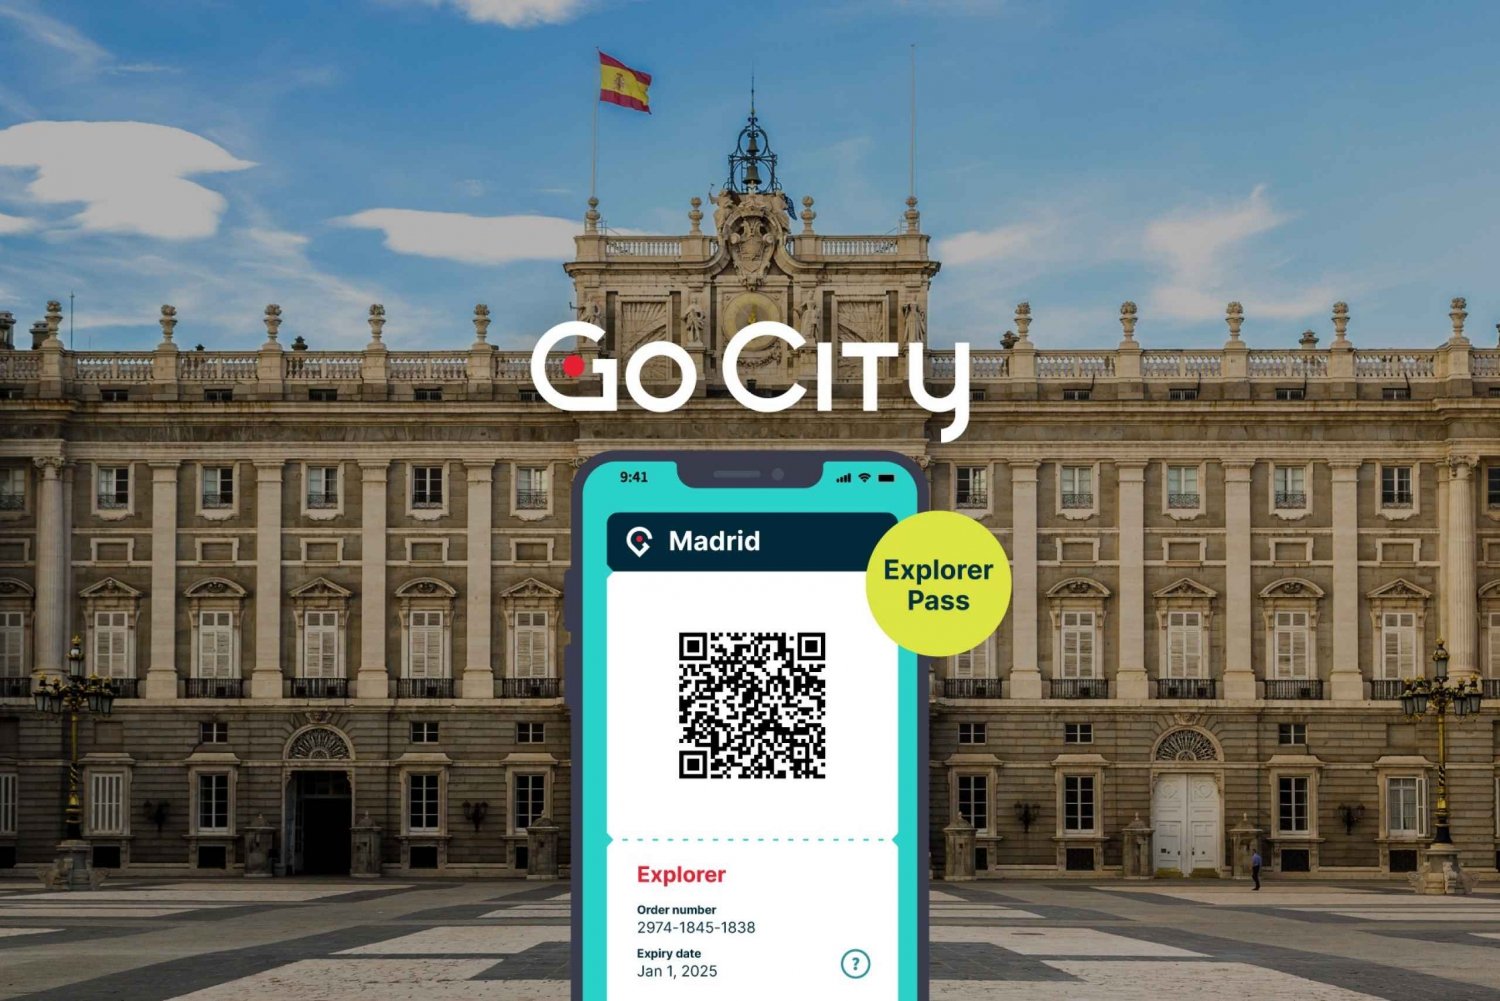 Madrid: Go City Explorer Pass - Scegli da 3 a 7 attrazioni